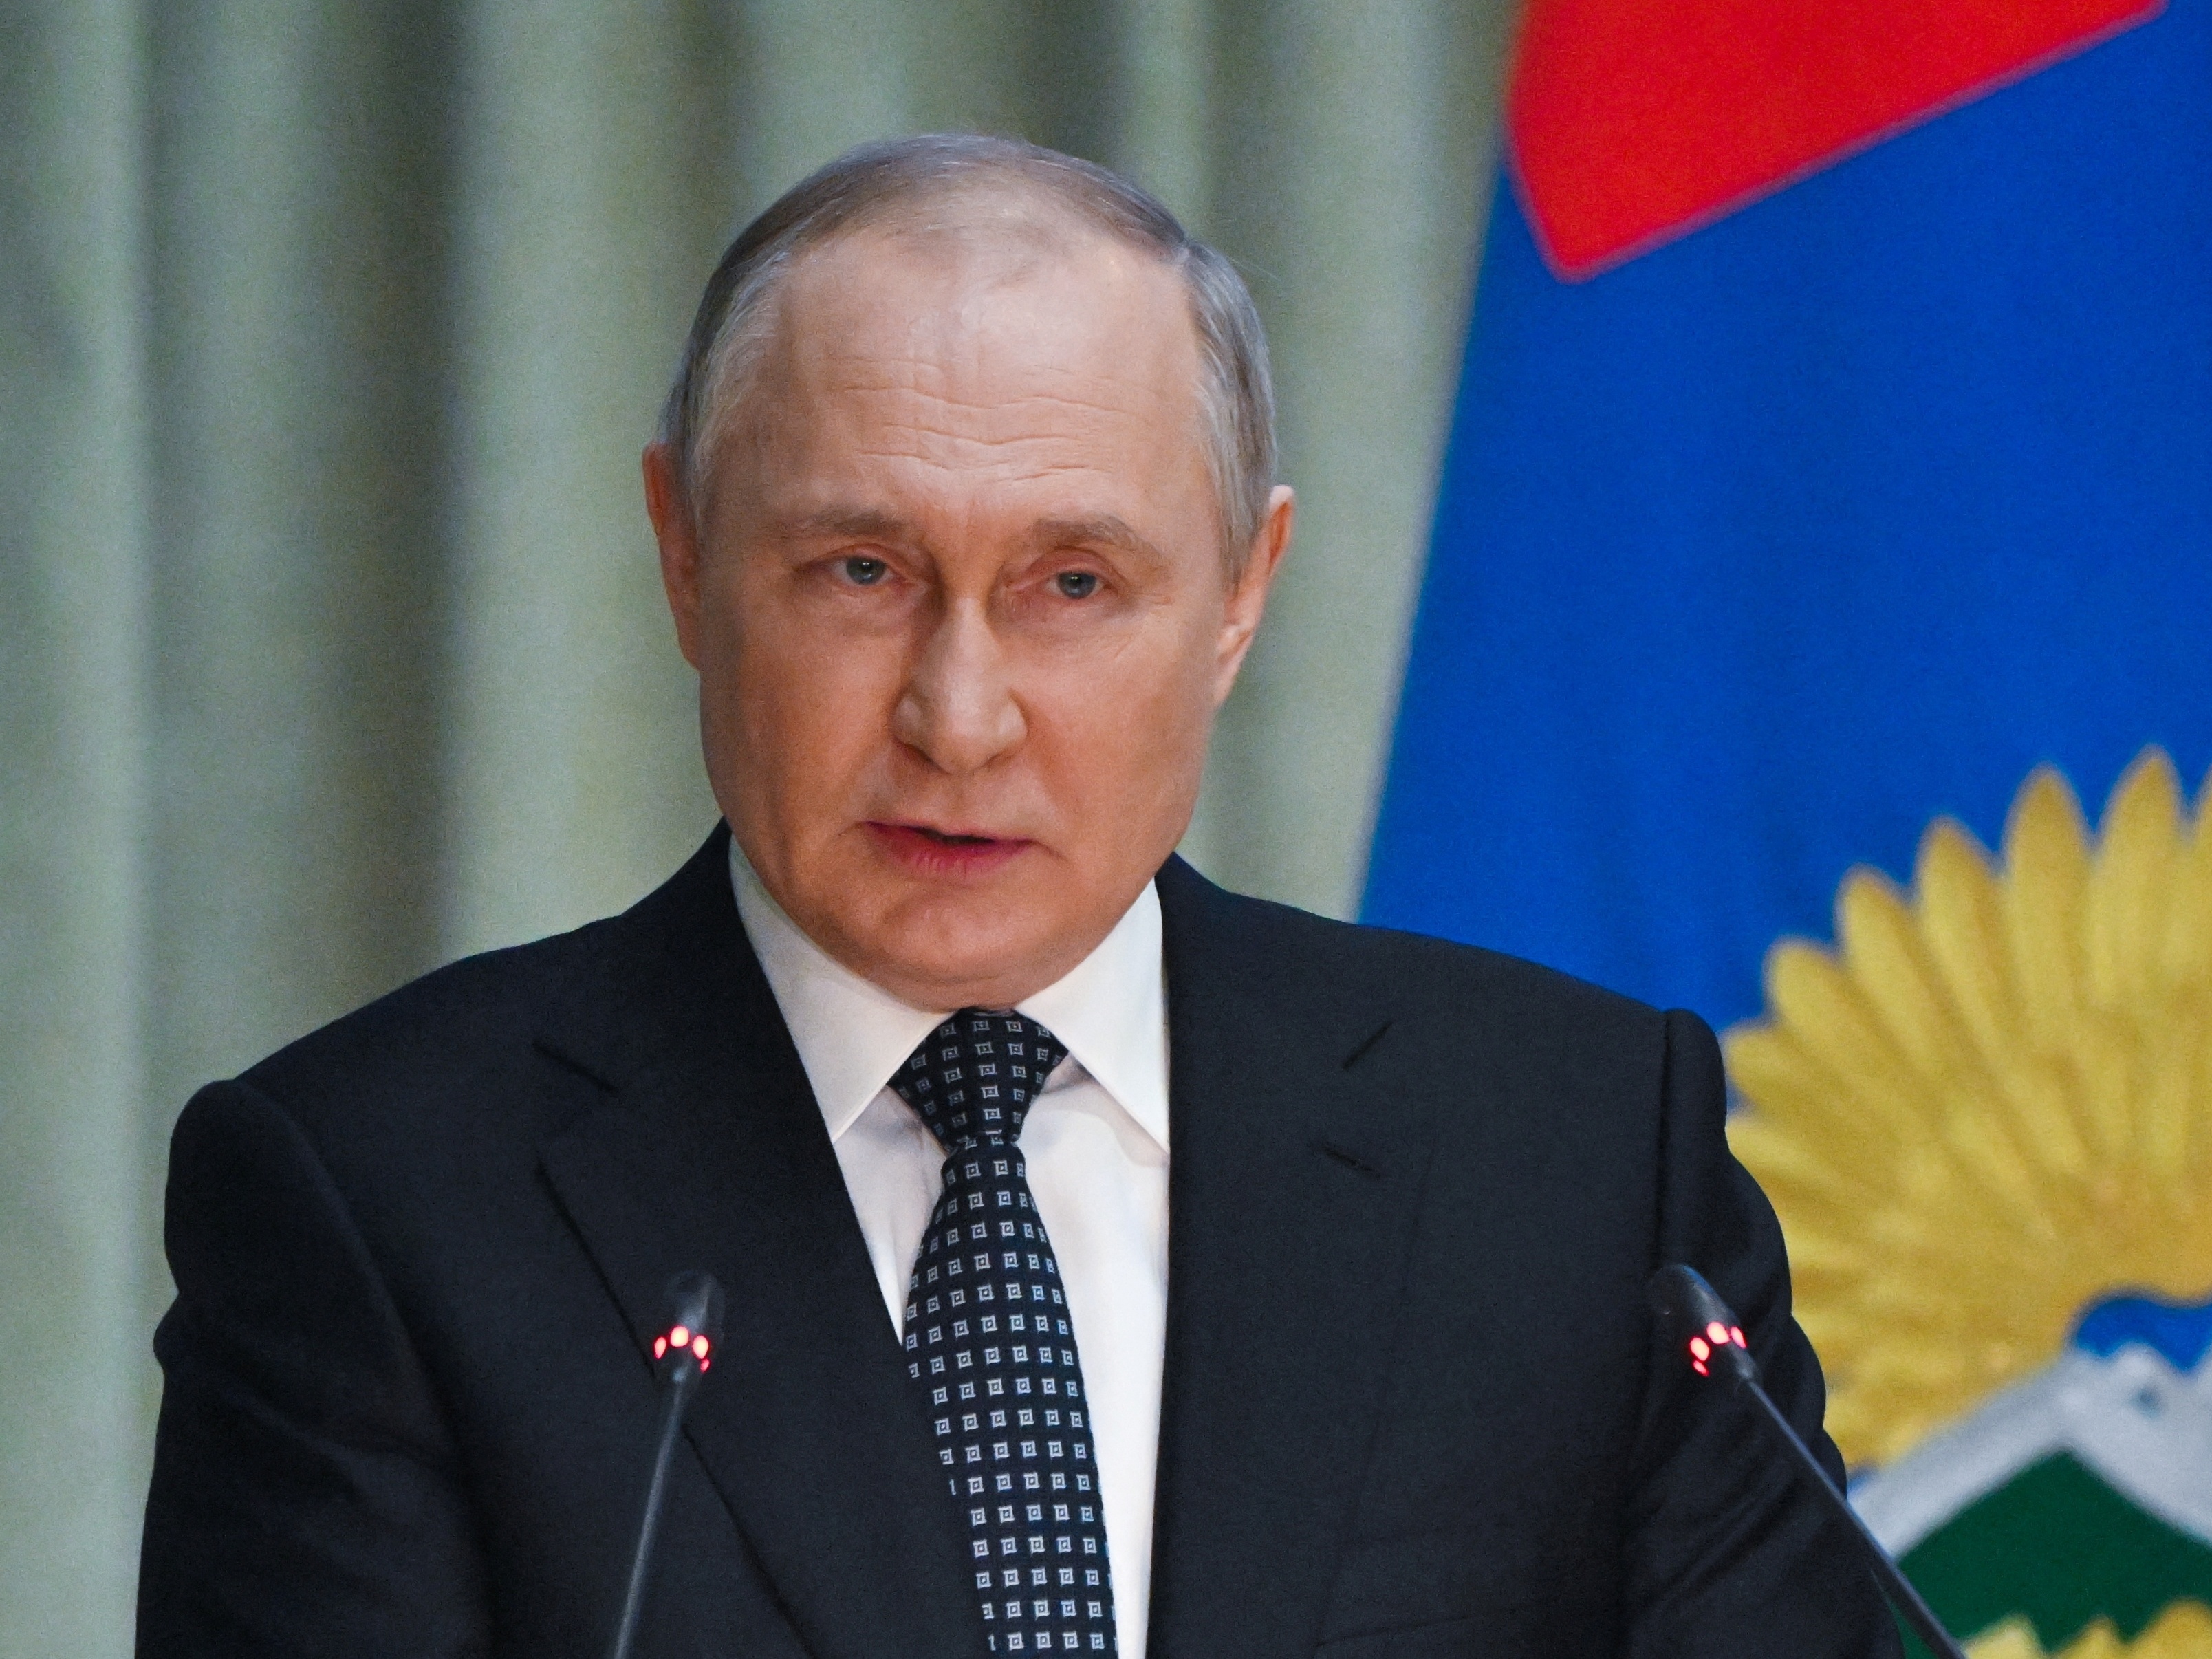 Vitória é garantida, não tenho dúvidas, acredita o Presidente Putin - SIC  Notícias